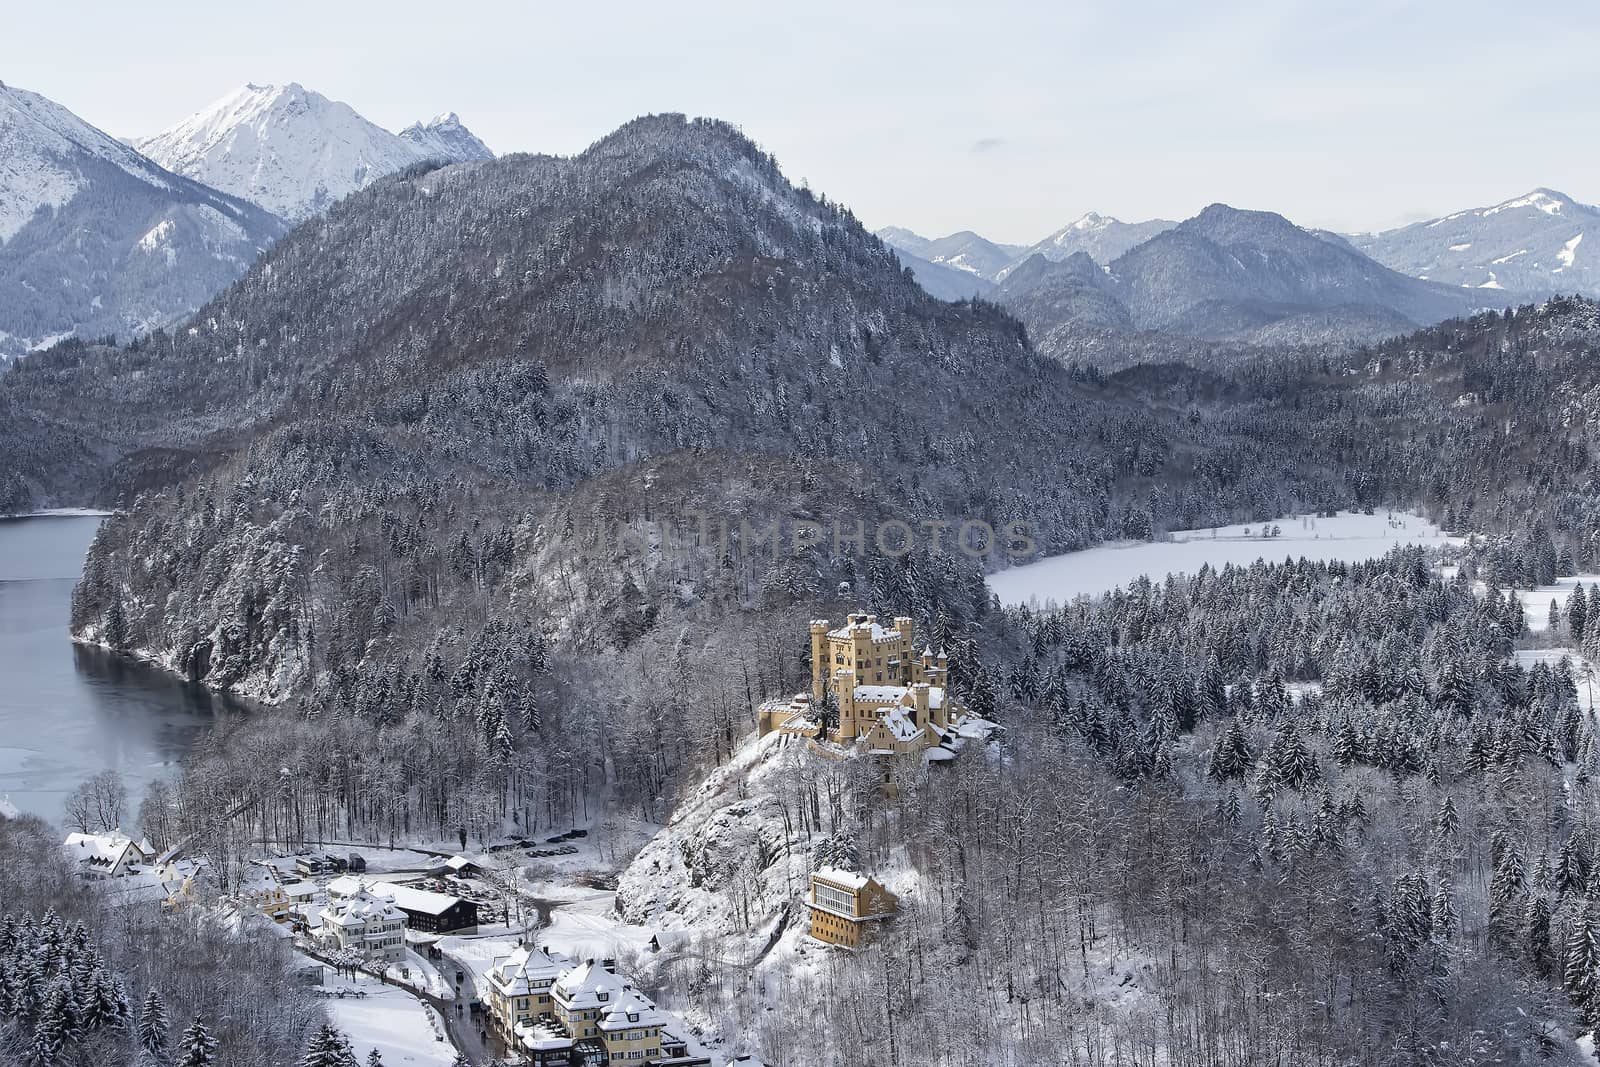 View from Neuschwanstein by lasseman